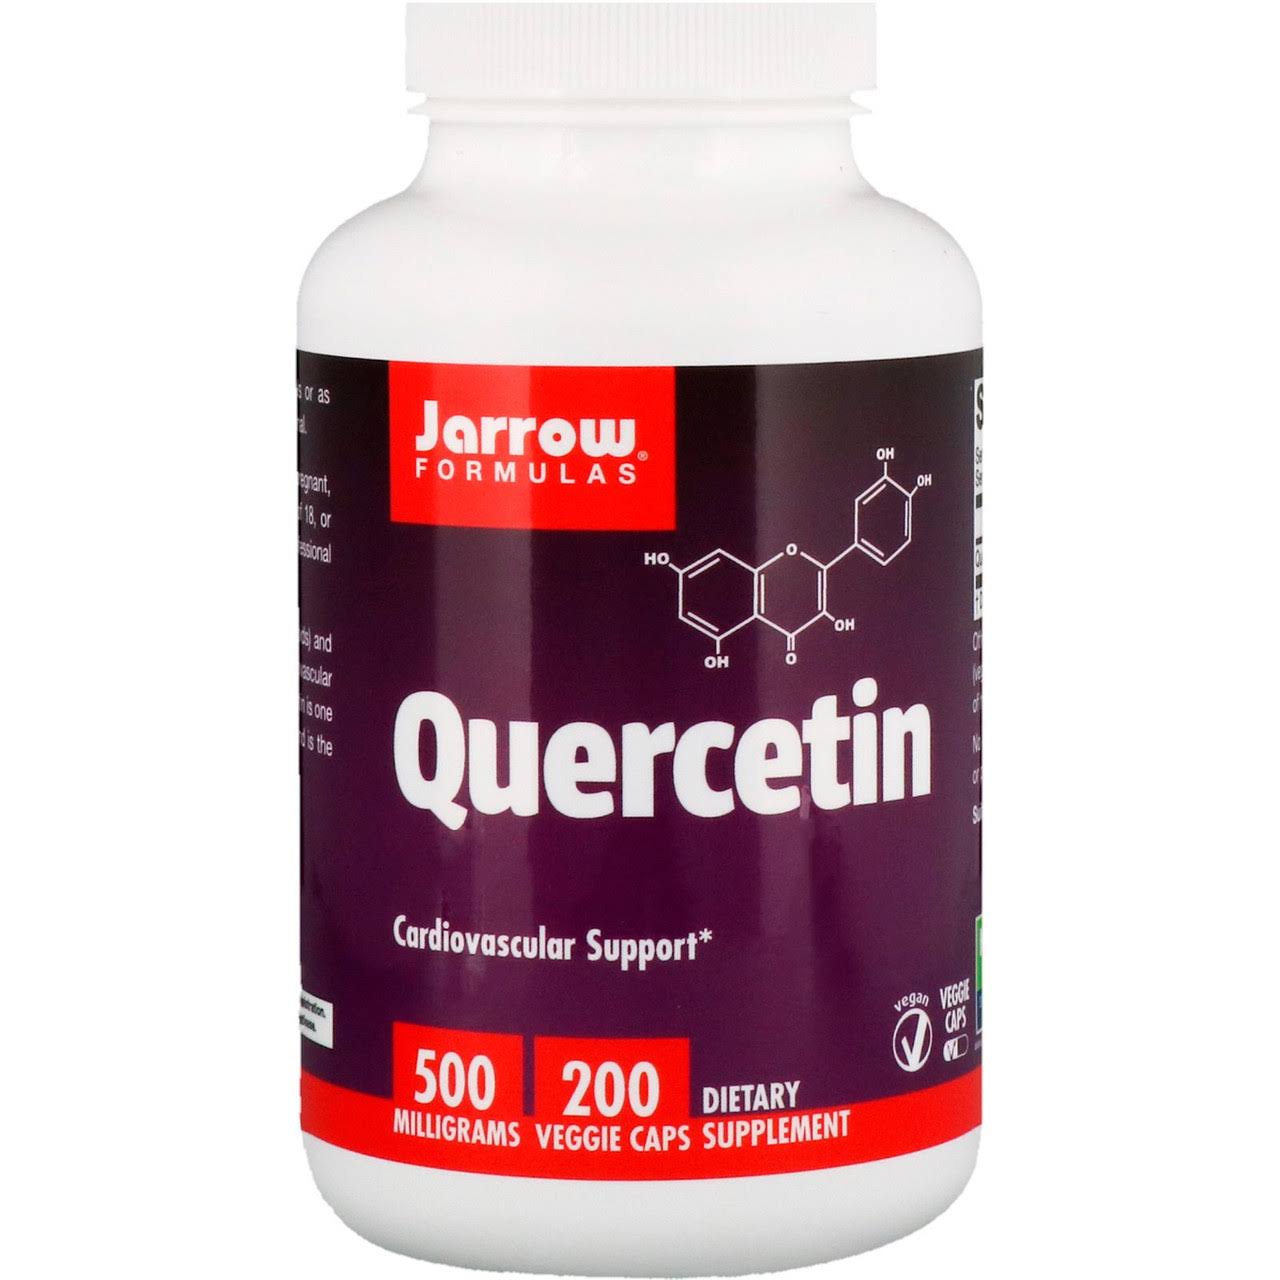 Jarrow Formulas Quercetin Dietary Supplement - 200 Capsules